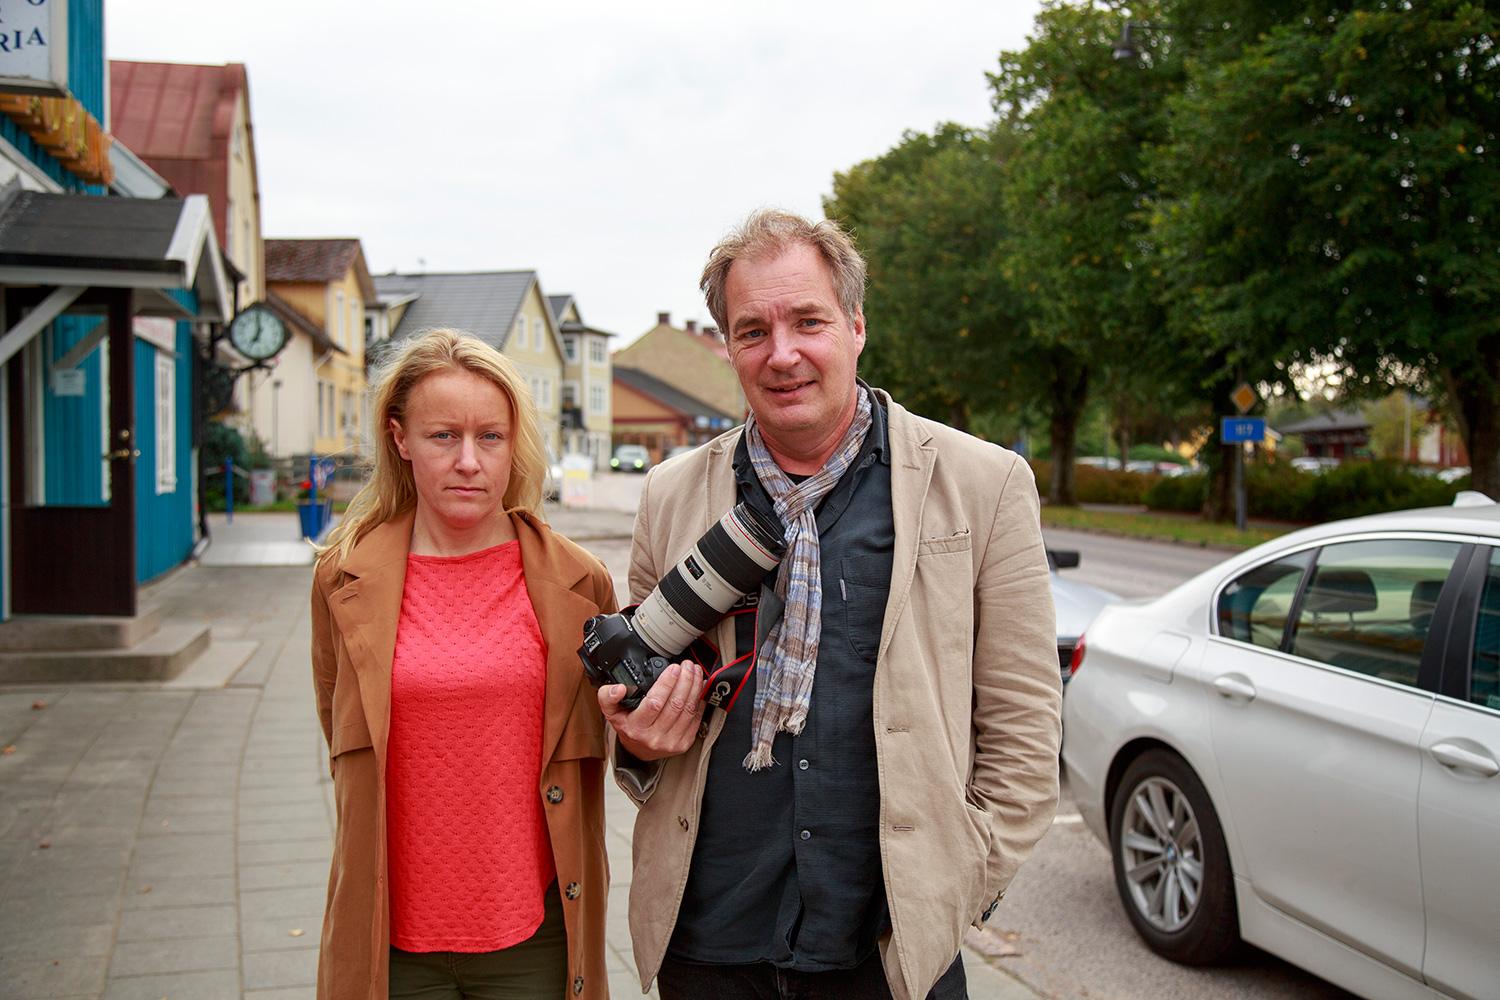 Aftonbladets reporter Susanna Nygren och fotograf Krister Hansson på plats i Vittsjö.